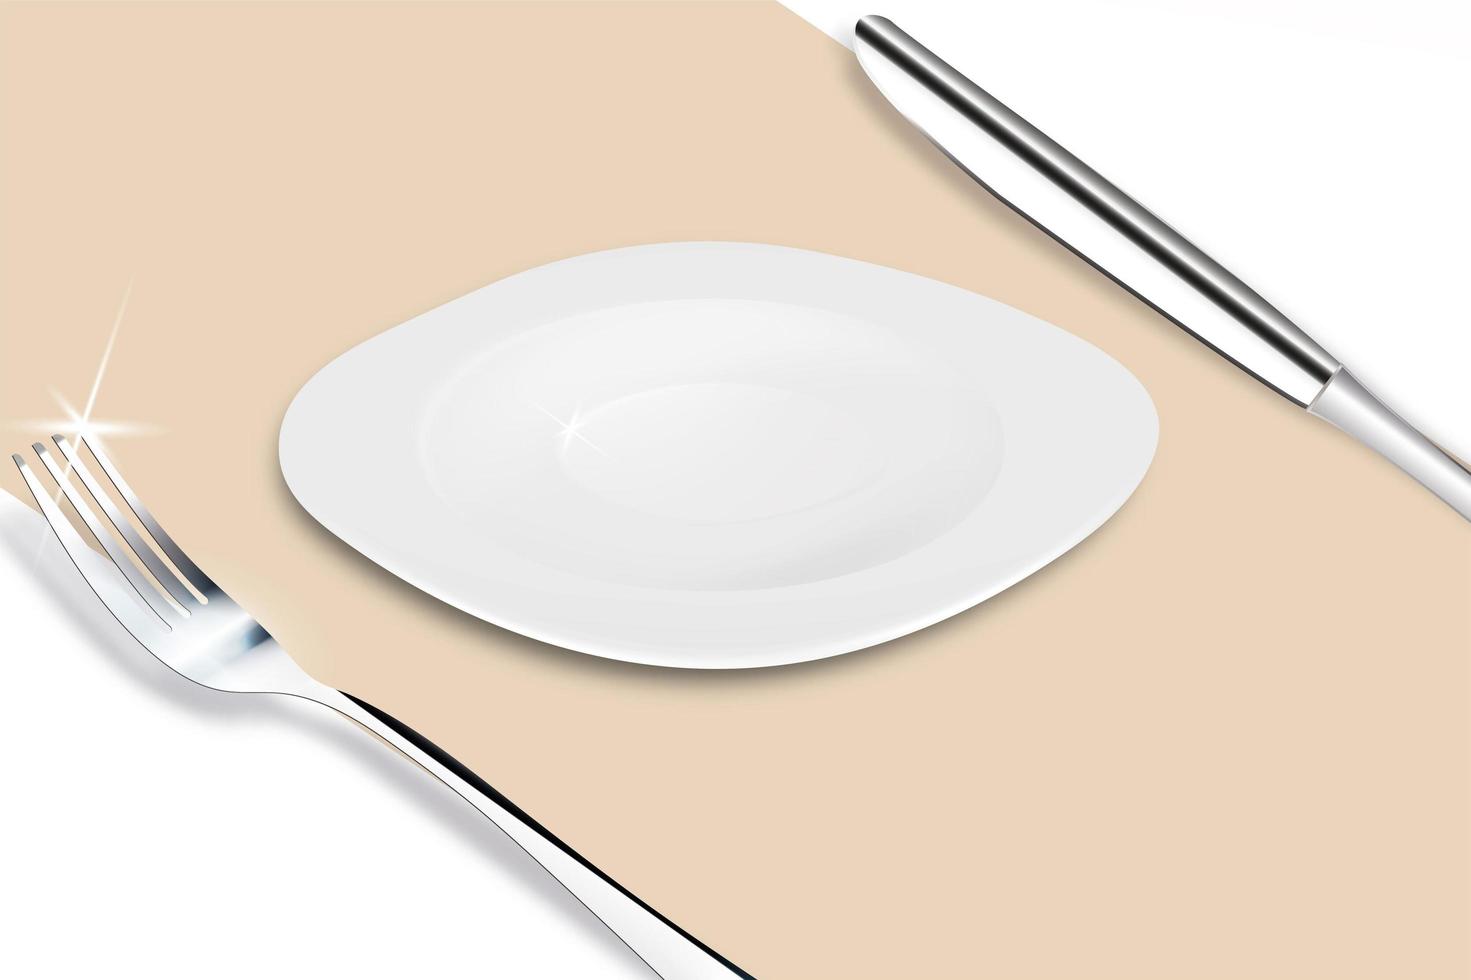 plato servido con tenedor y cuchillo sobre un lienzo beige con sombra. Ilustración de vector 3d del diseño del restaurante, cafetería.